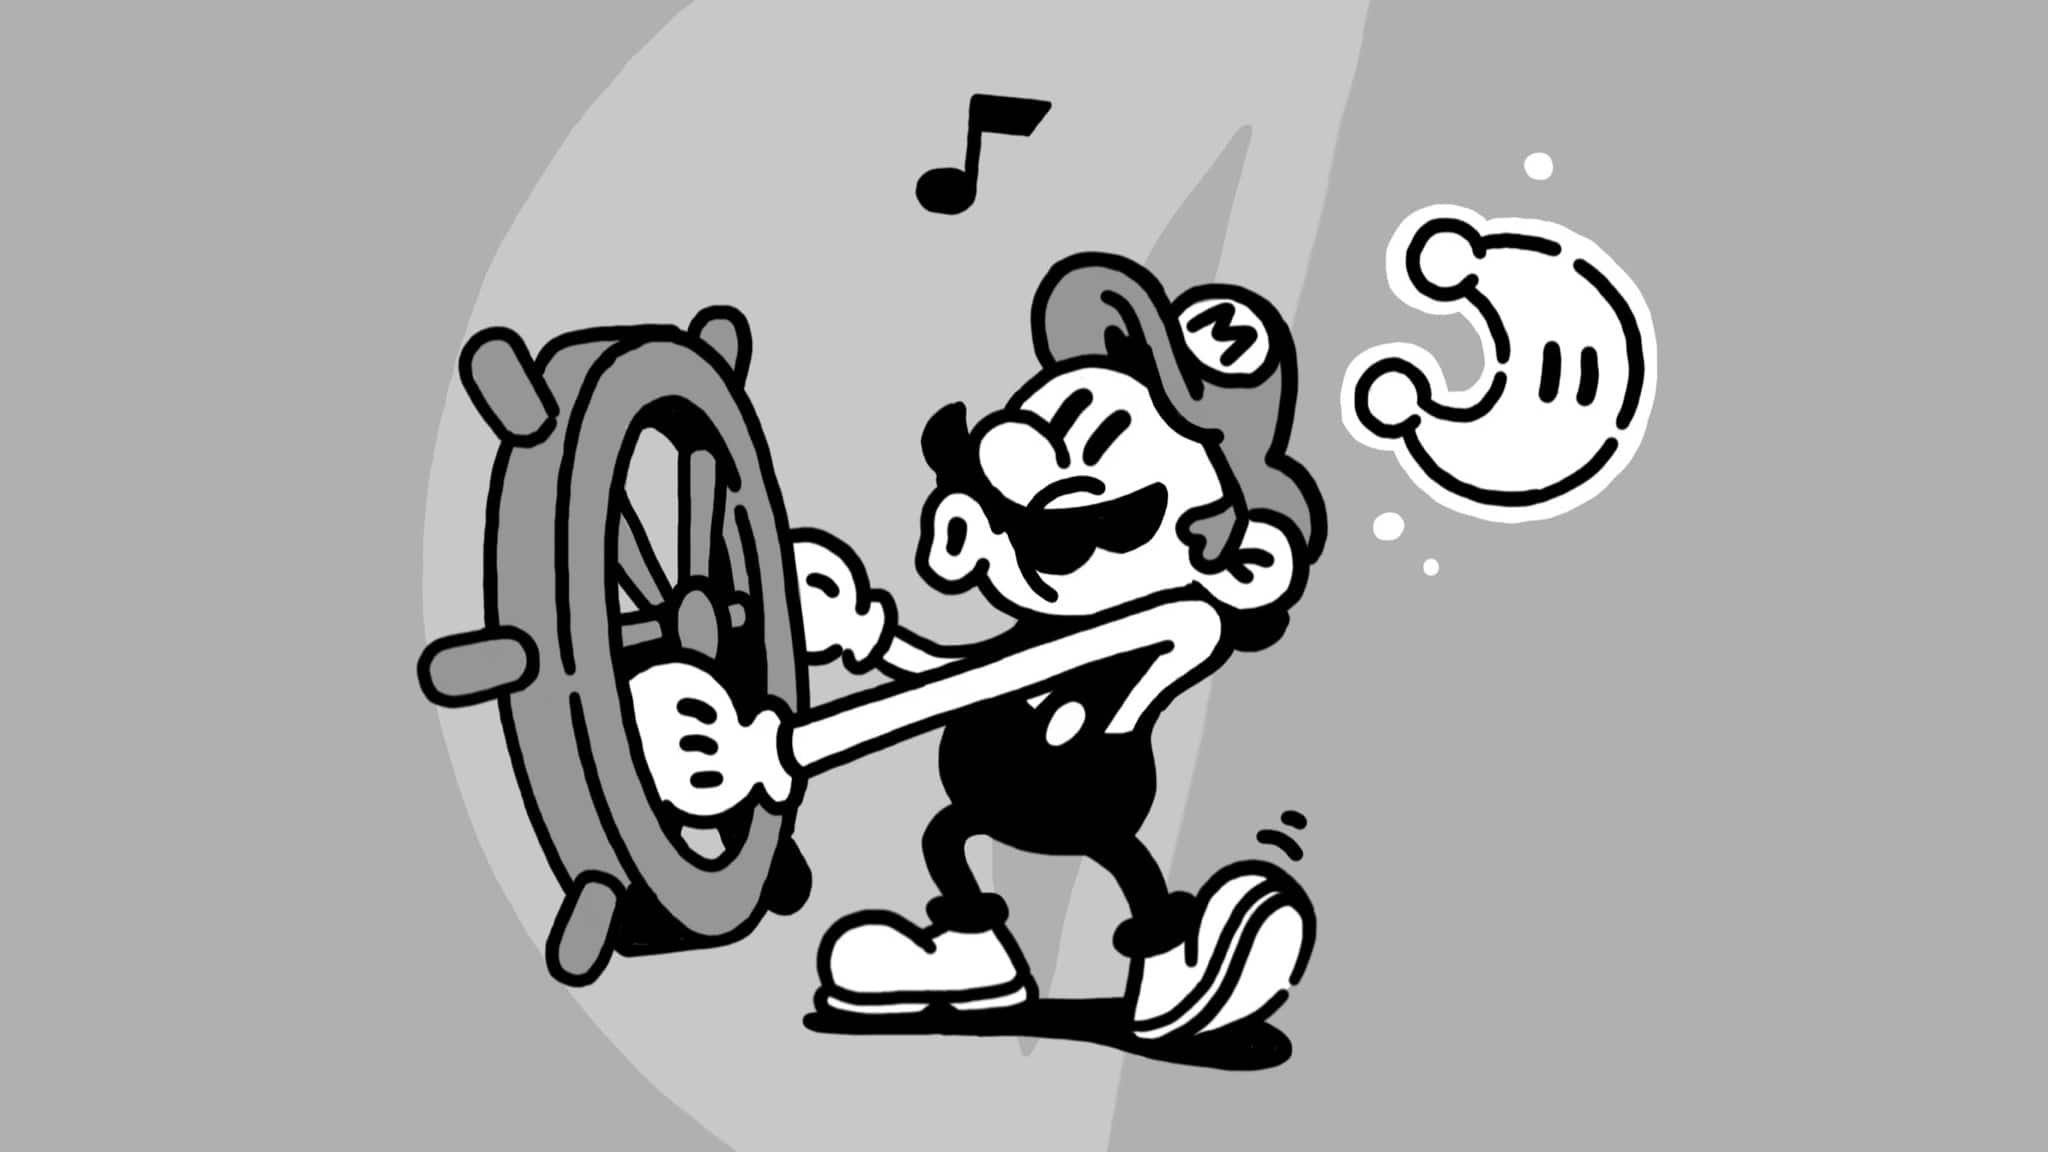 James Turner publica esta ilustración de Mario recreando una famosa escena de Mickey Mouse en Steamboat Willie